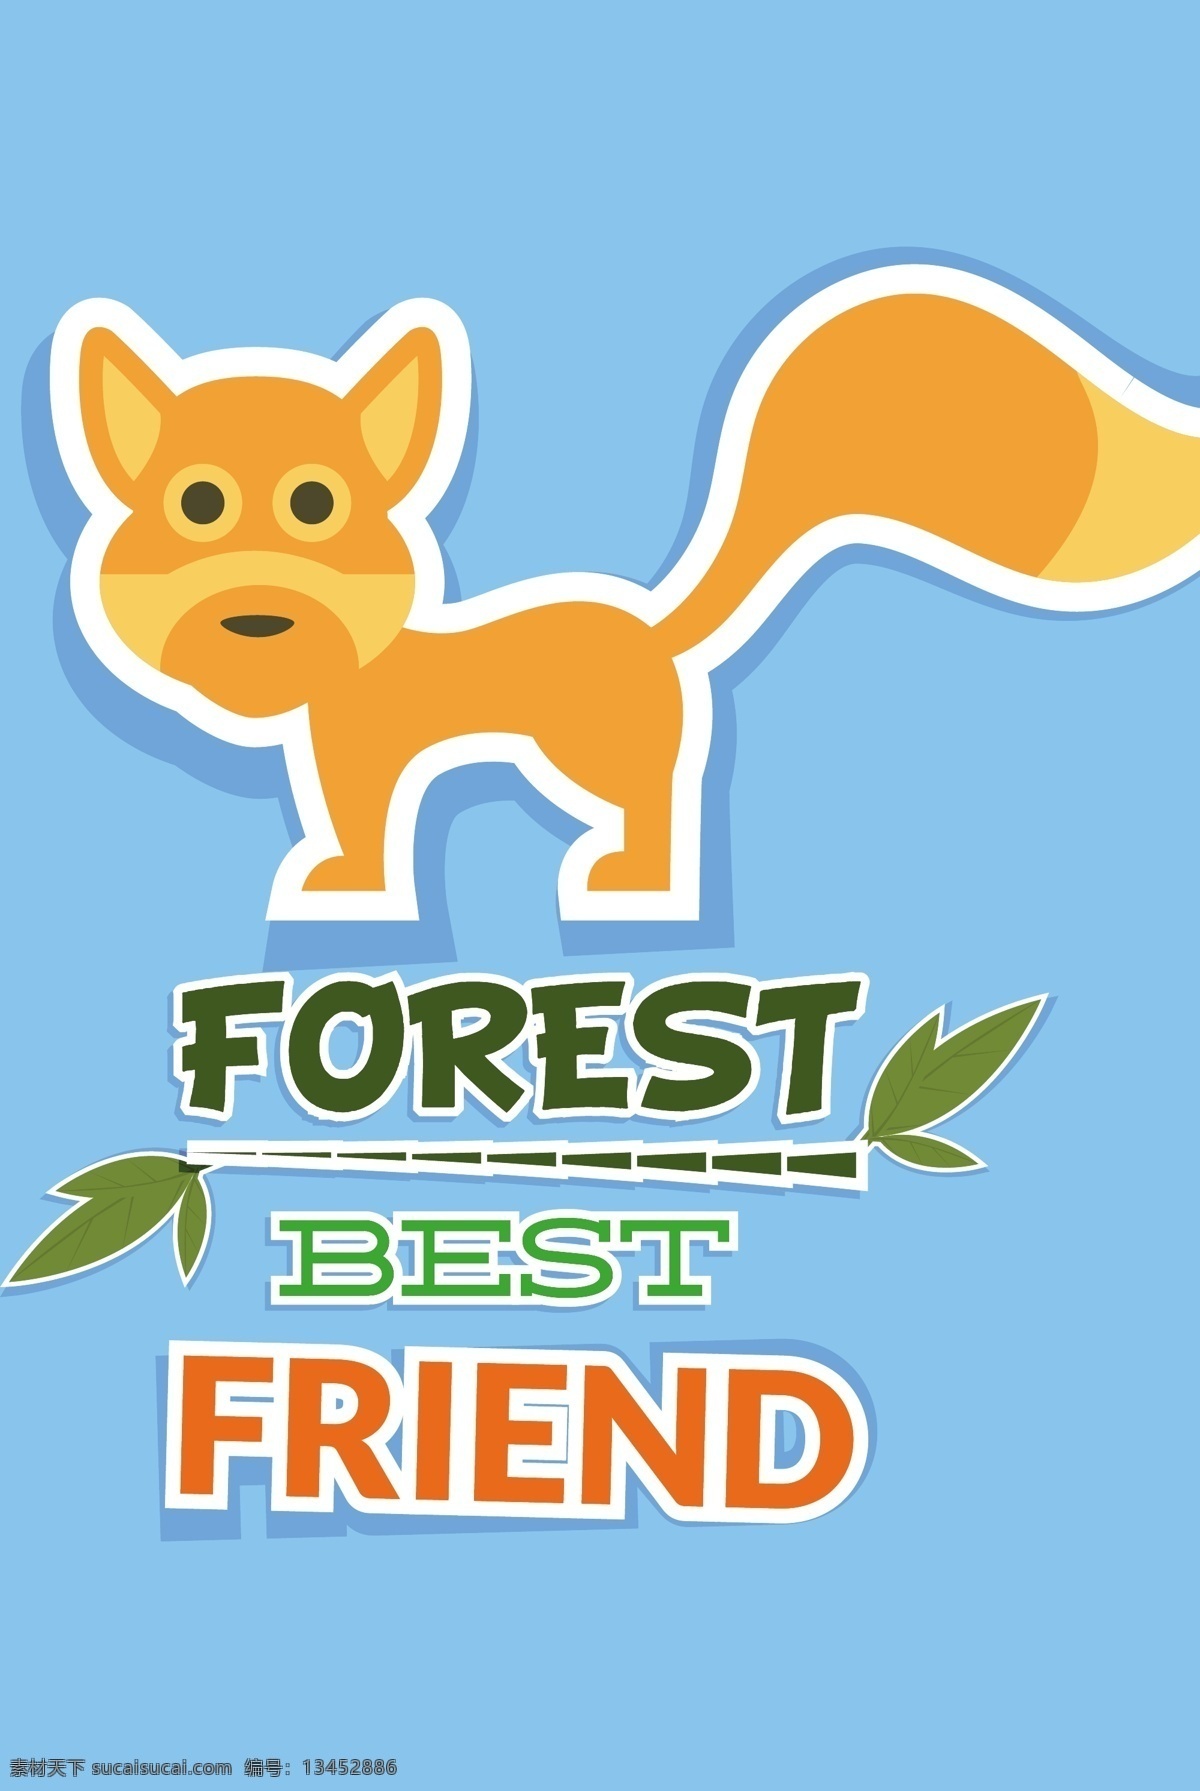 狐狸 动物 可爱 背景 矢量 红色 字体 背景素材 创意设计 源文件 竹叶 广告背景 平面设计素材